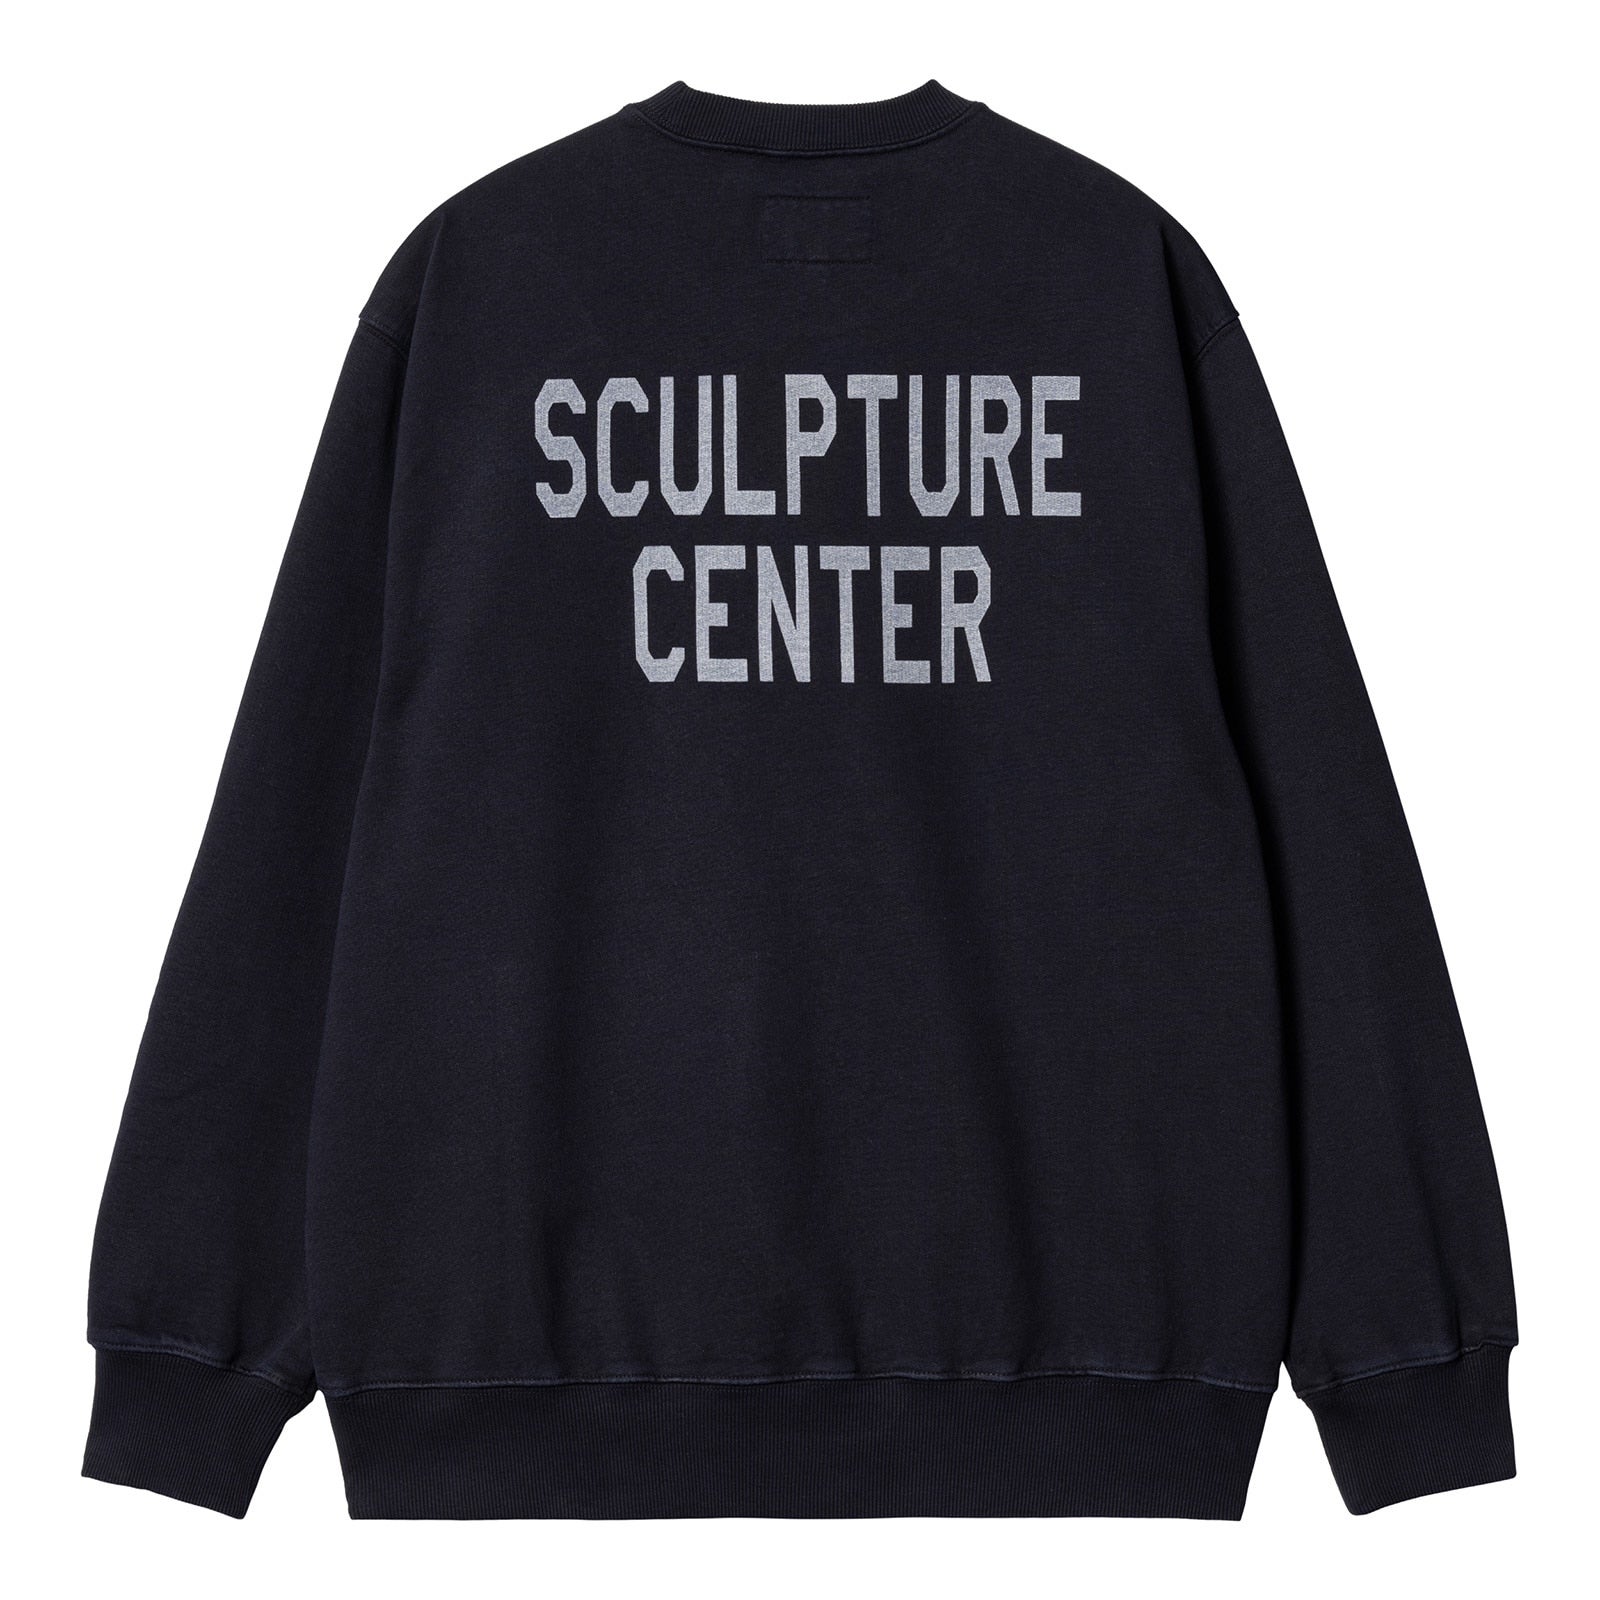 Carhartt WIP×New Balance Sculpture Center Sweatshirt